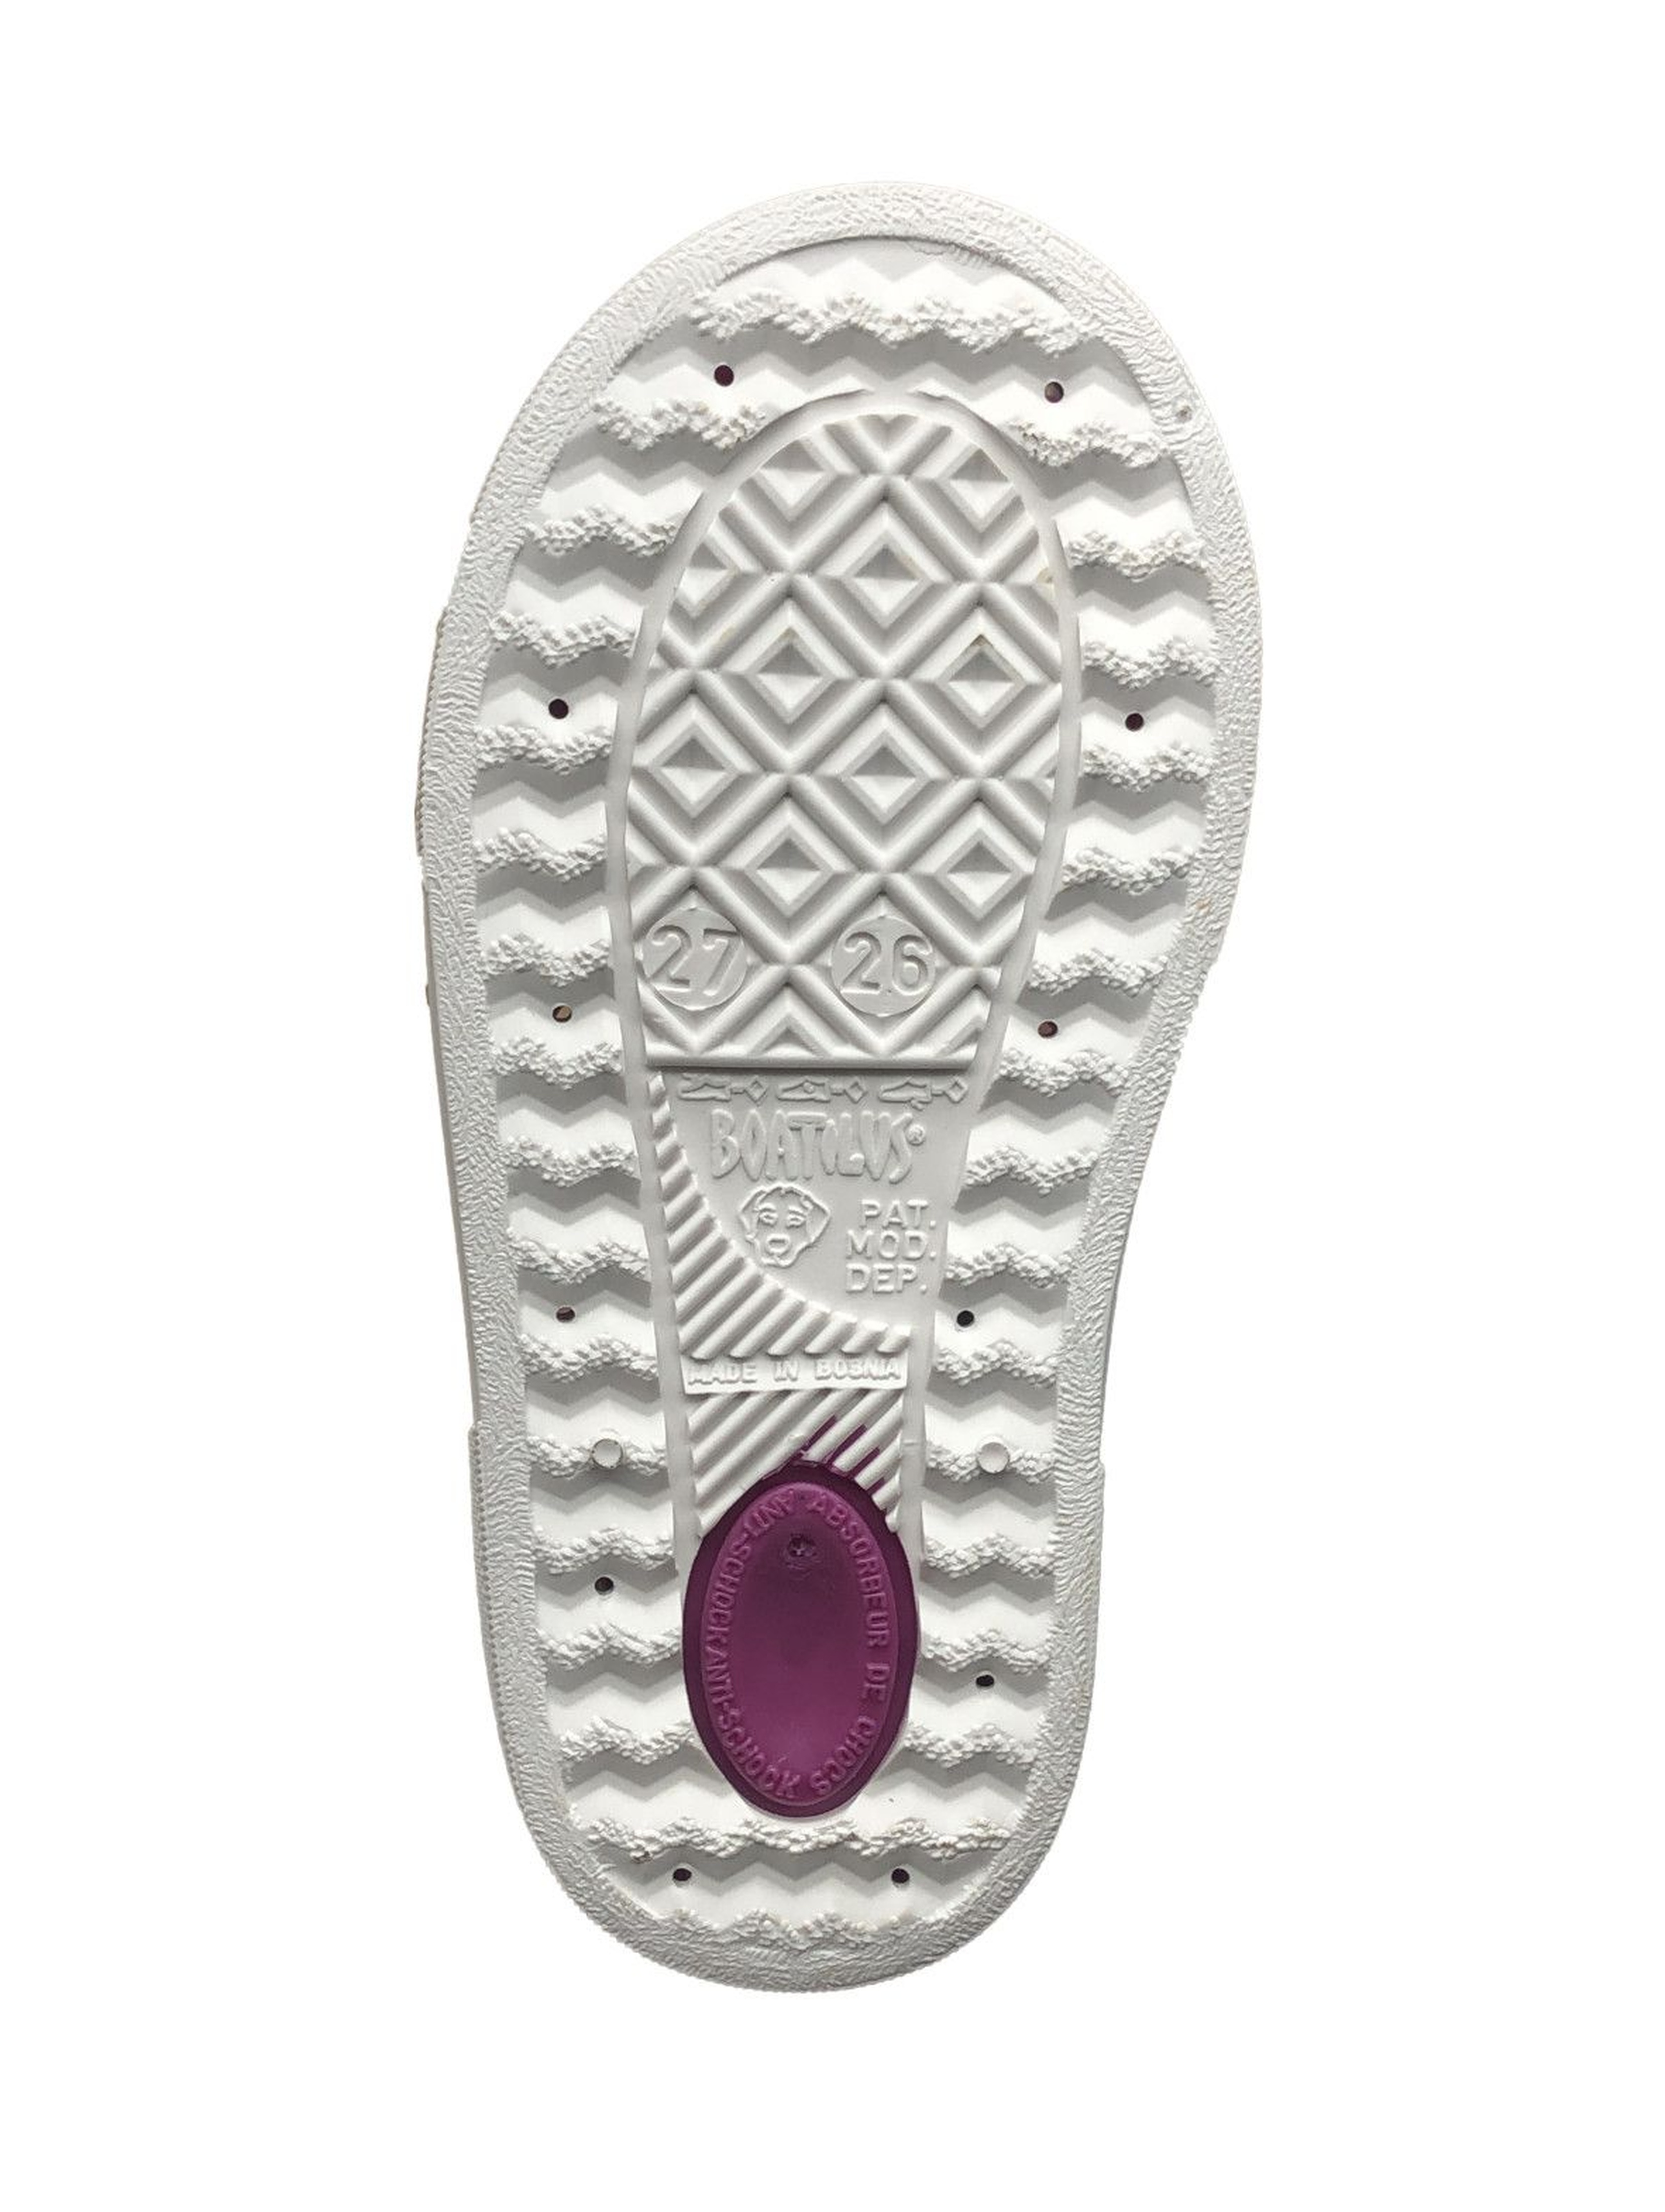 Sandałki dziewczęce fumowe- fioletowe